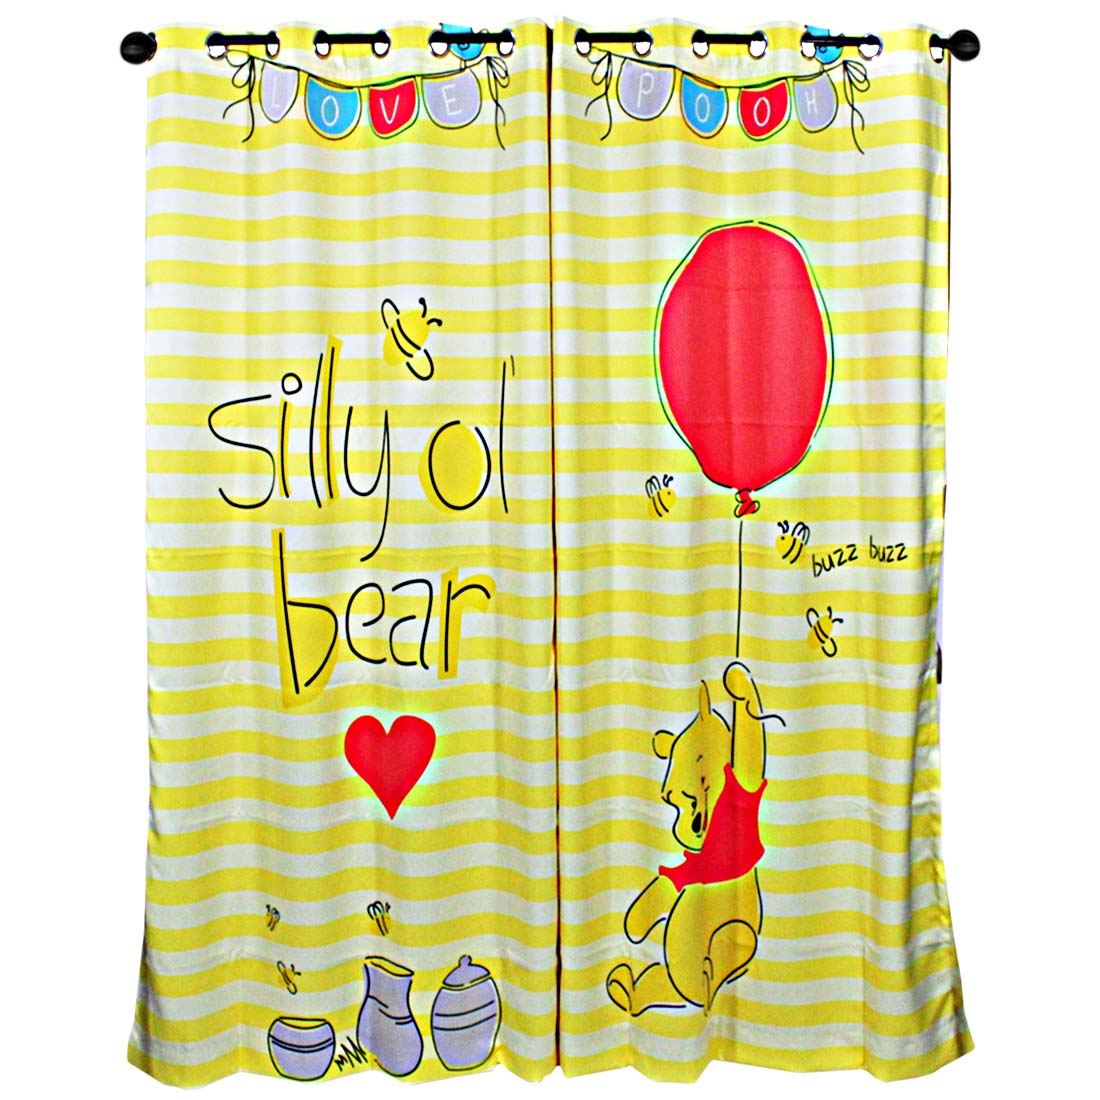 ORKA Sillyol Teddy Bear Design Digital Printed Door Curtain  